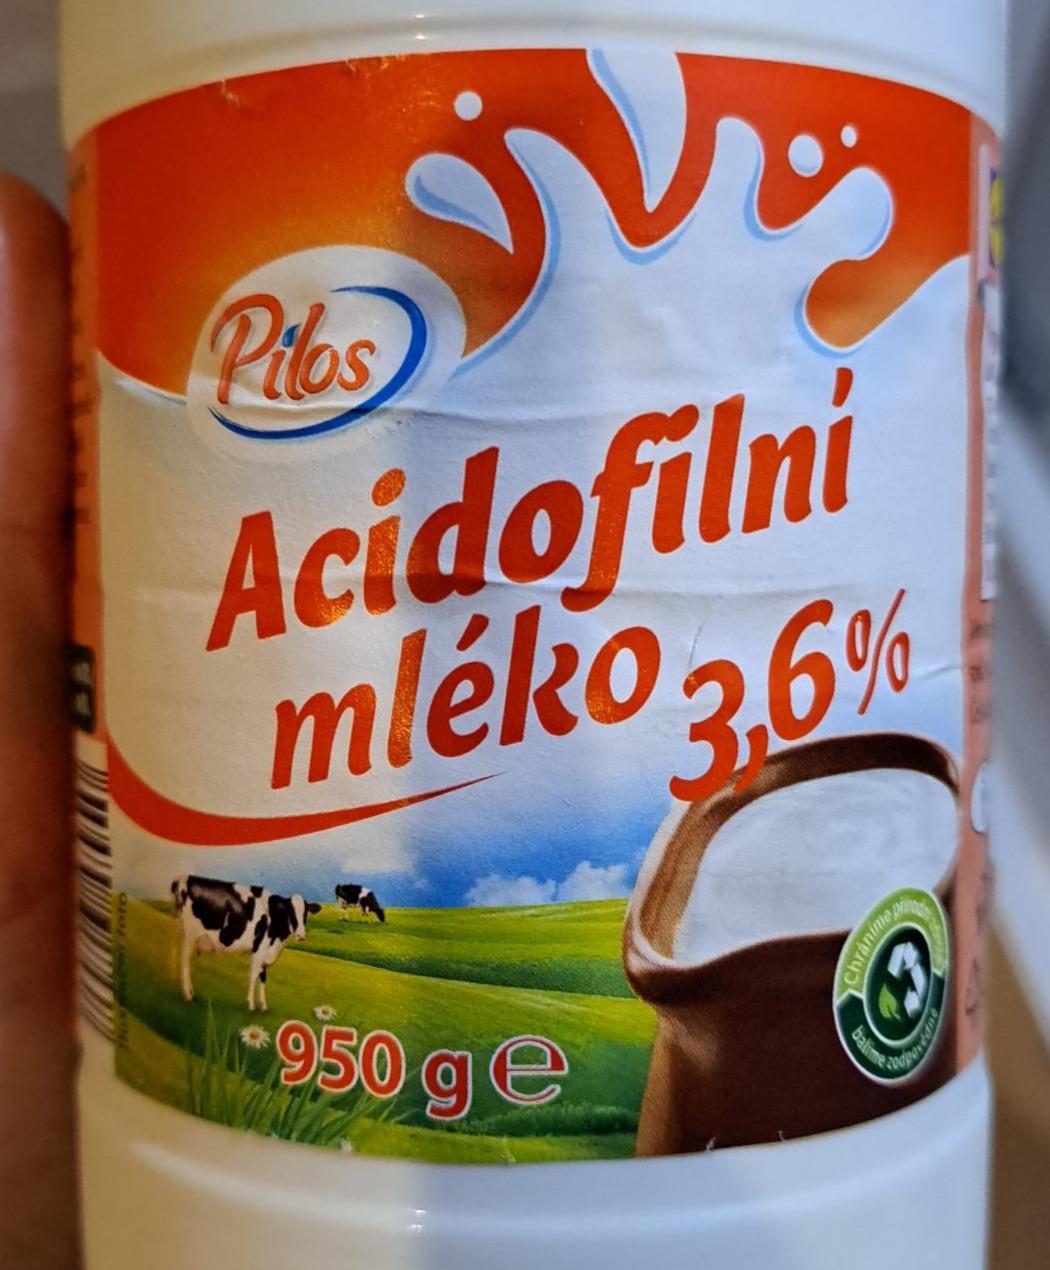 Fotografie - Acidofilní mléko 3,6% Pilos